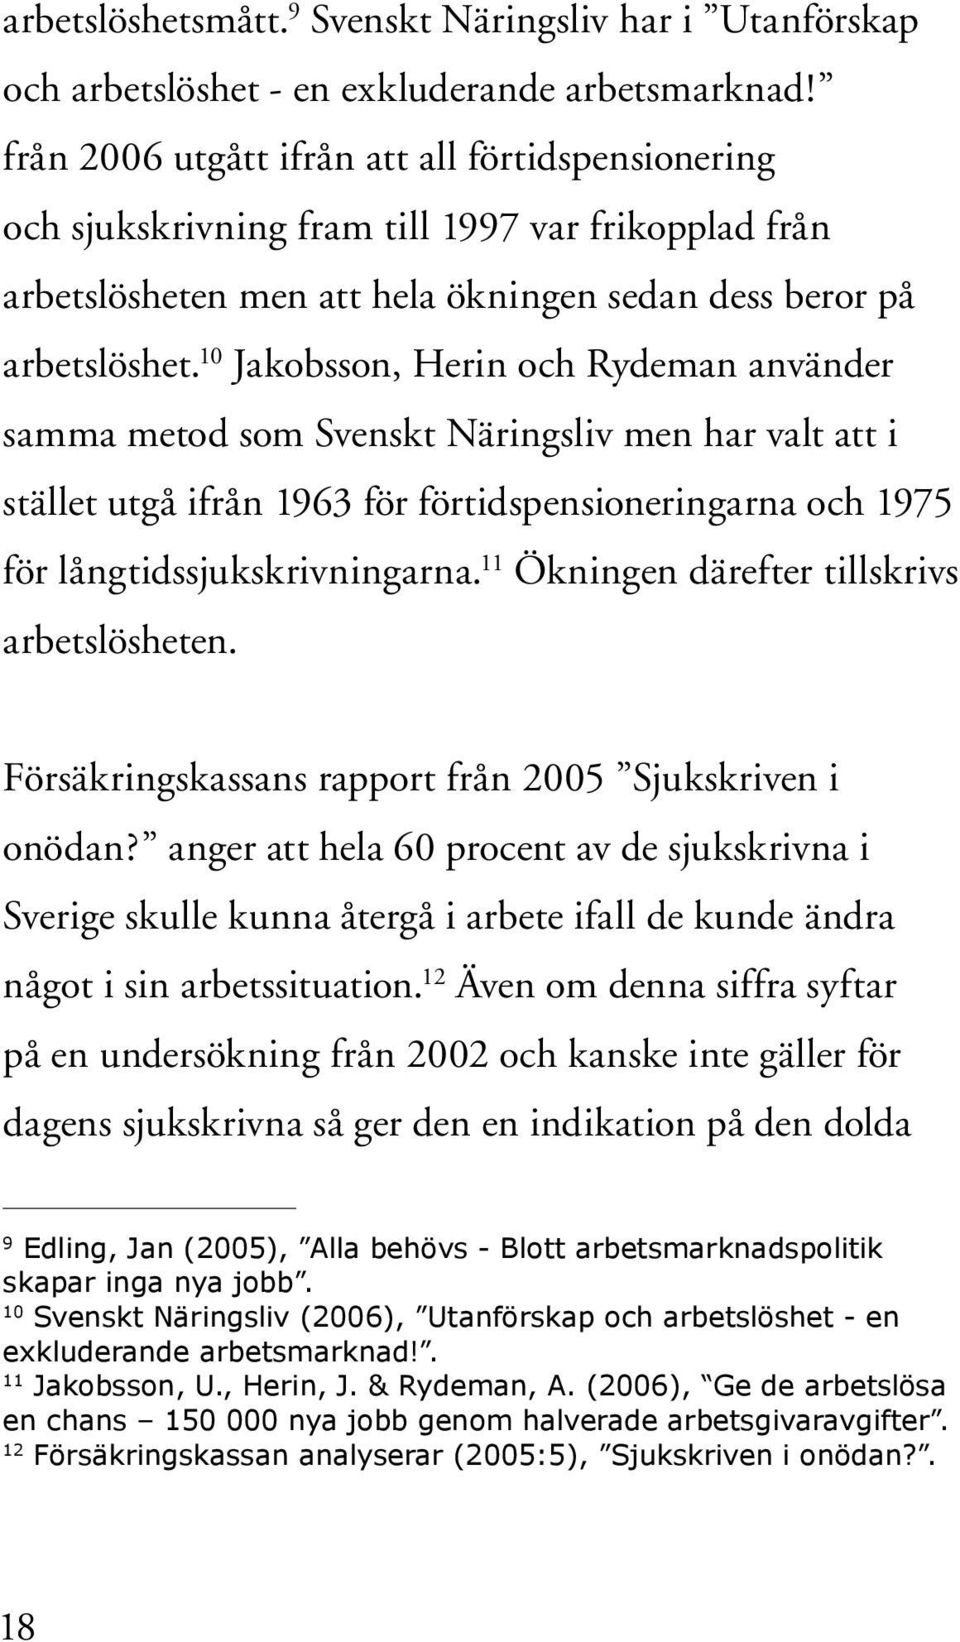 10 Jakobsson, Herin och Rydeman använder samma metod som Svenskt Näringsliv men har valt att i stället utgå ifrån 1963 för förtidspensioneringarna och 1975 för långtidssjukskrivningarna.